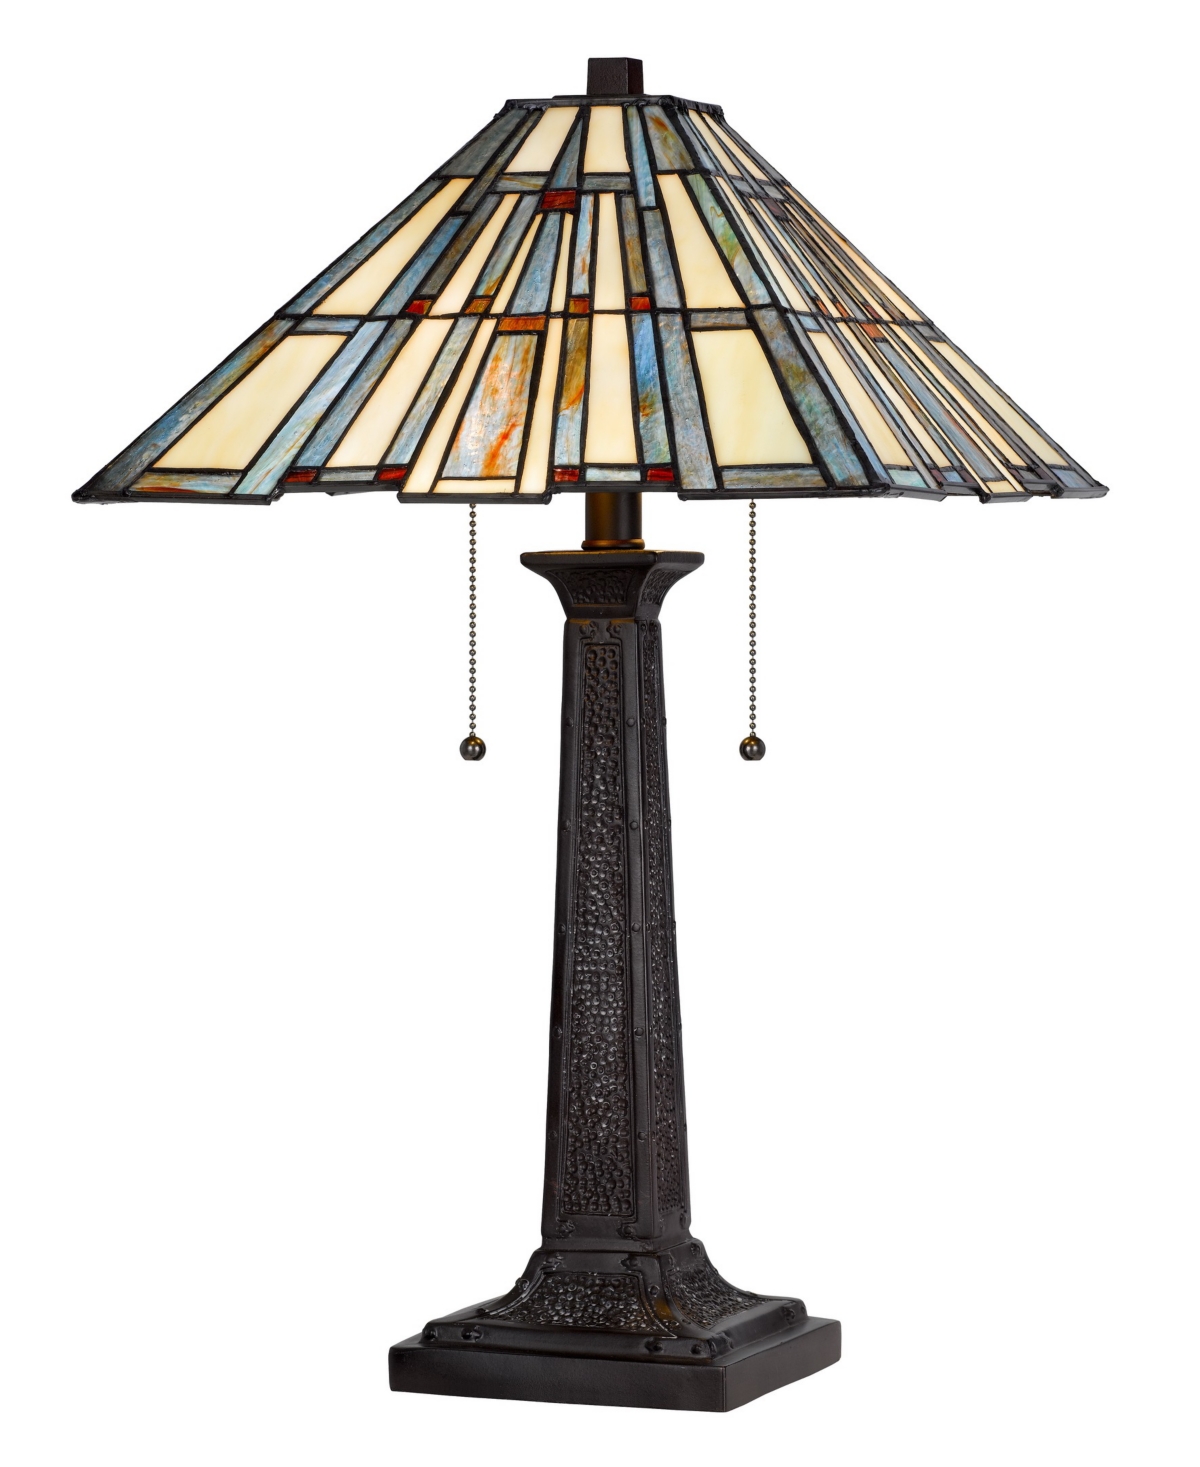 Cal Lighting 23" Height Metal And Resin Table Lamp In Dark Bronze